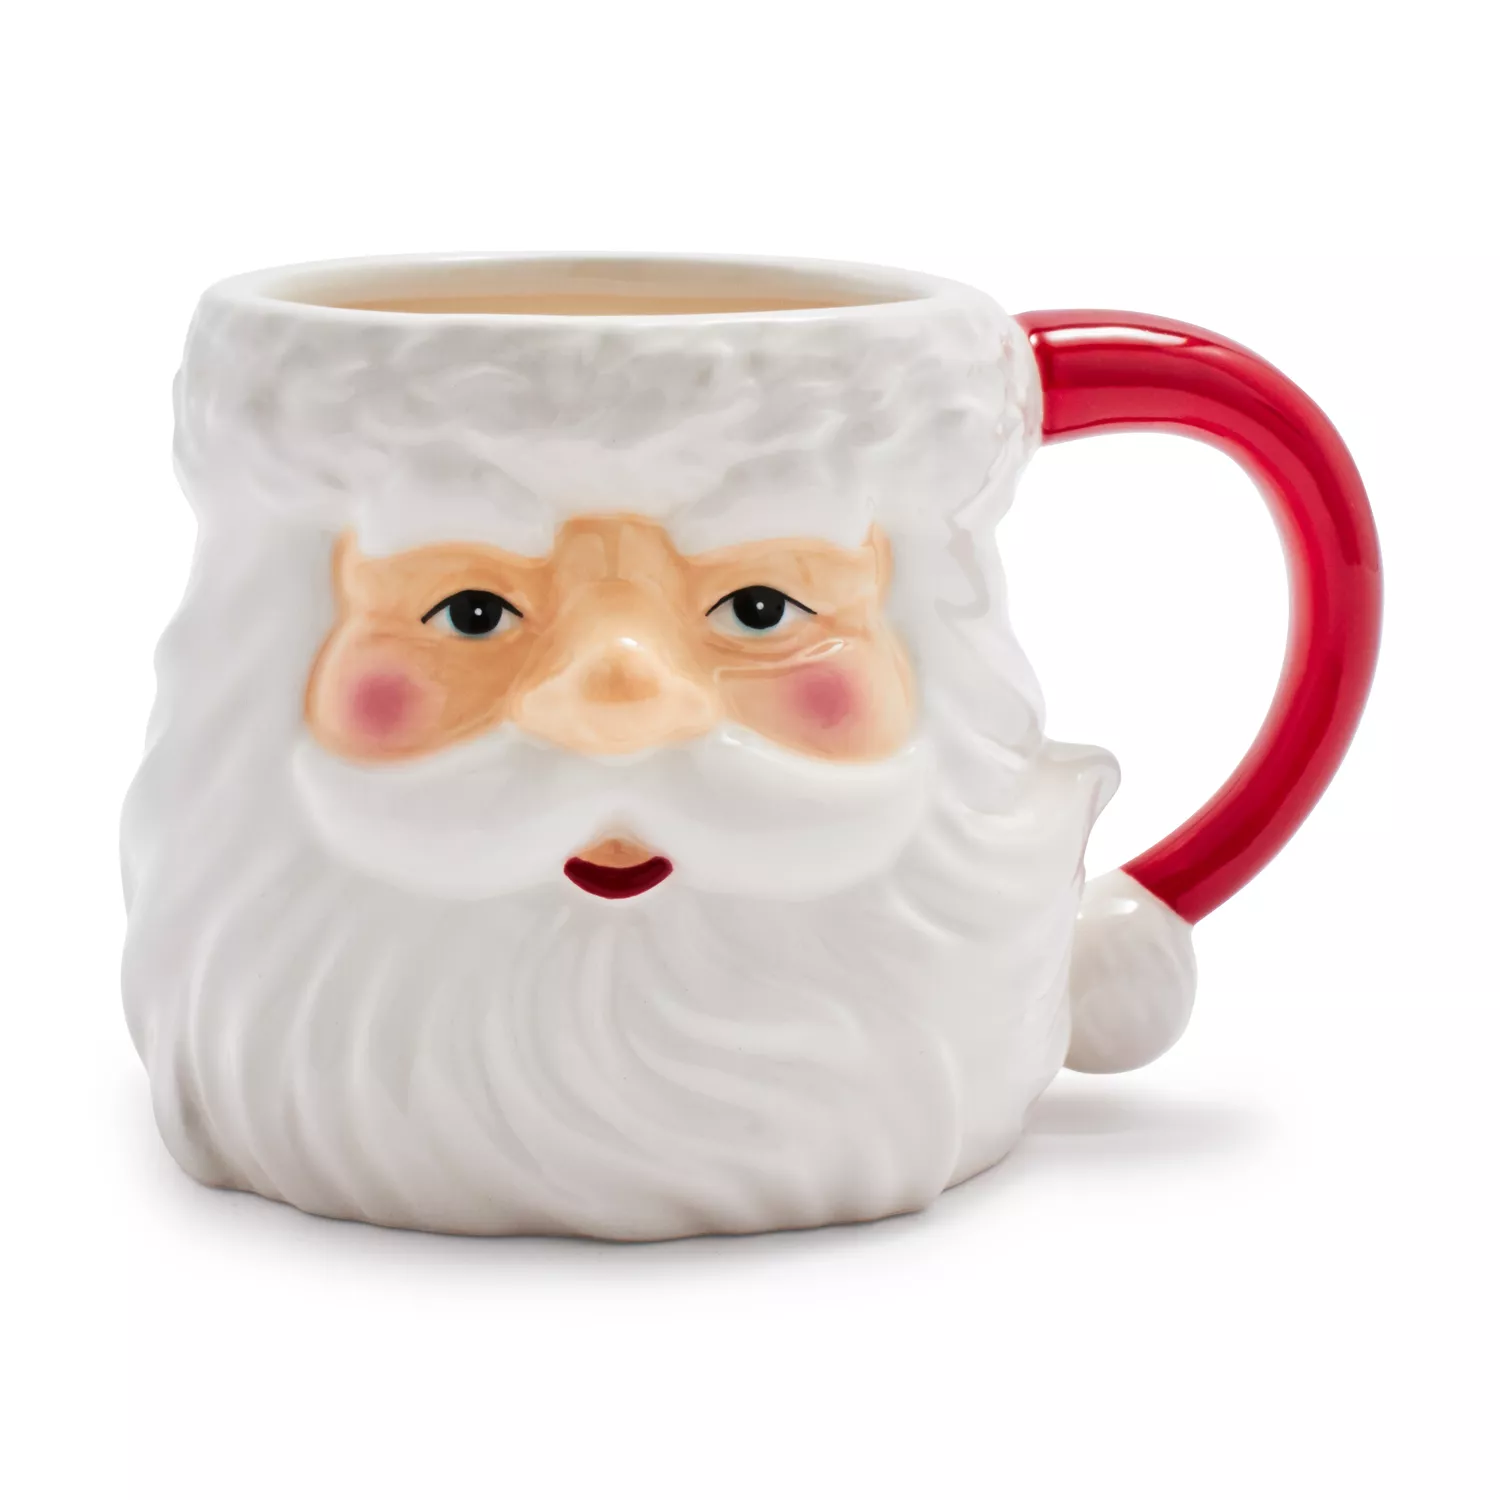 Santa Figural Mug, 16 Oz.